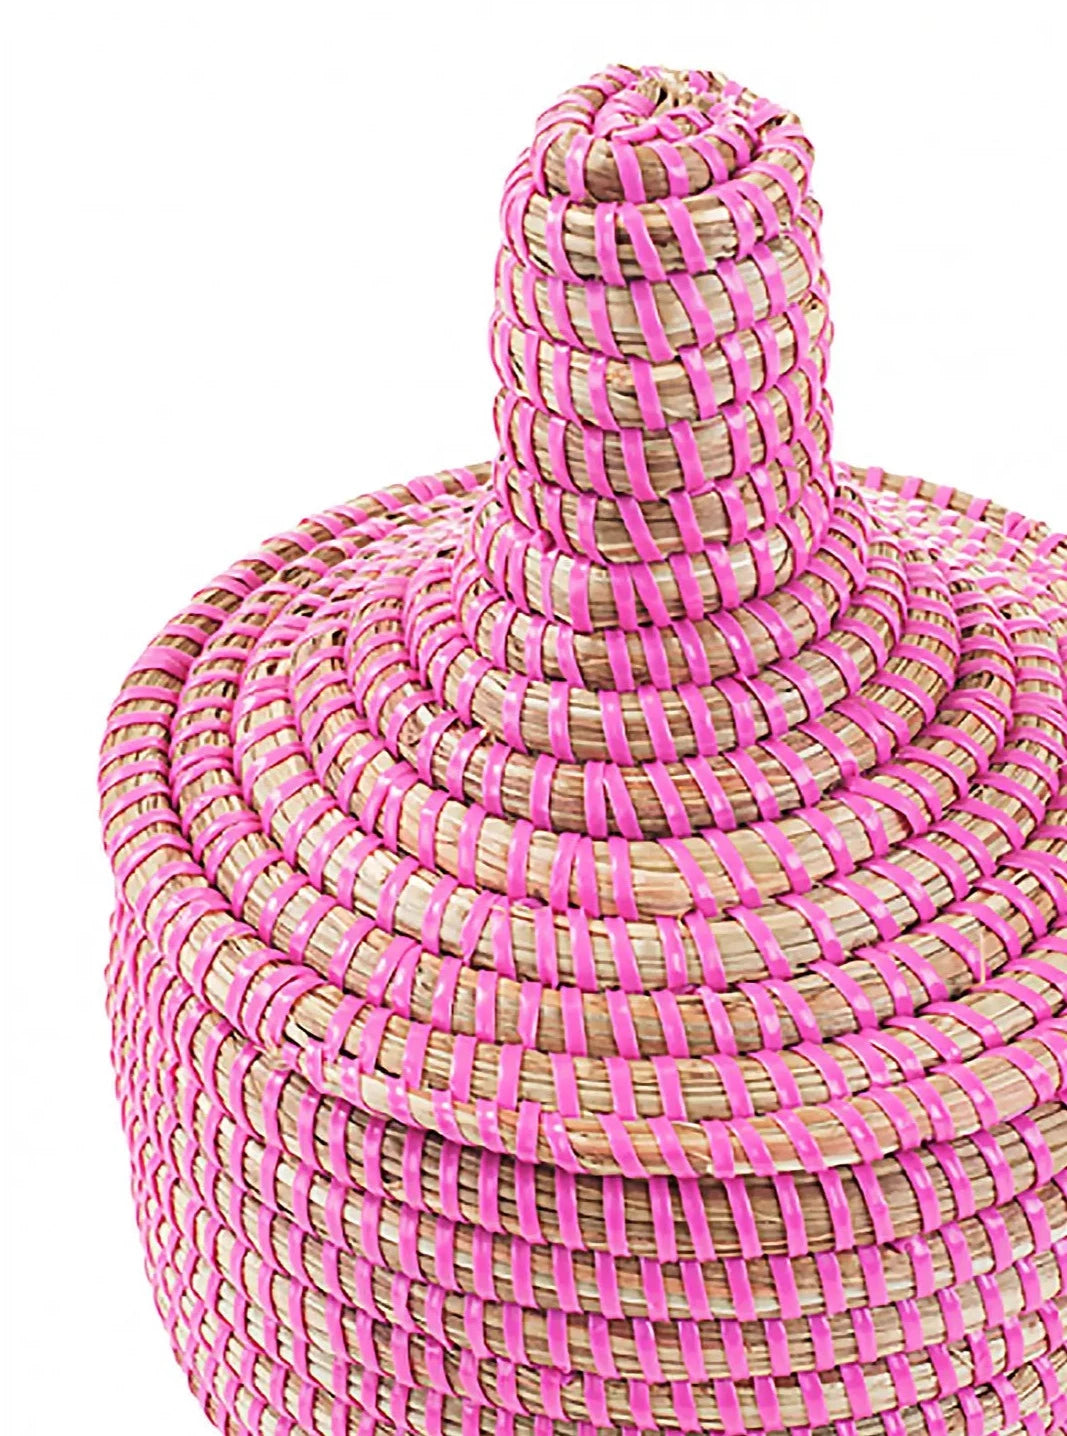 Miniature Pink Warming Basket